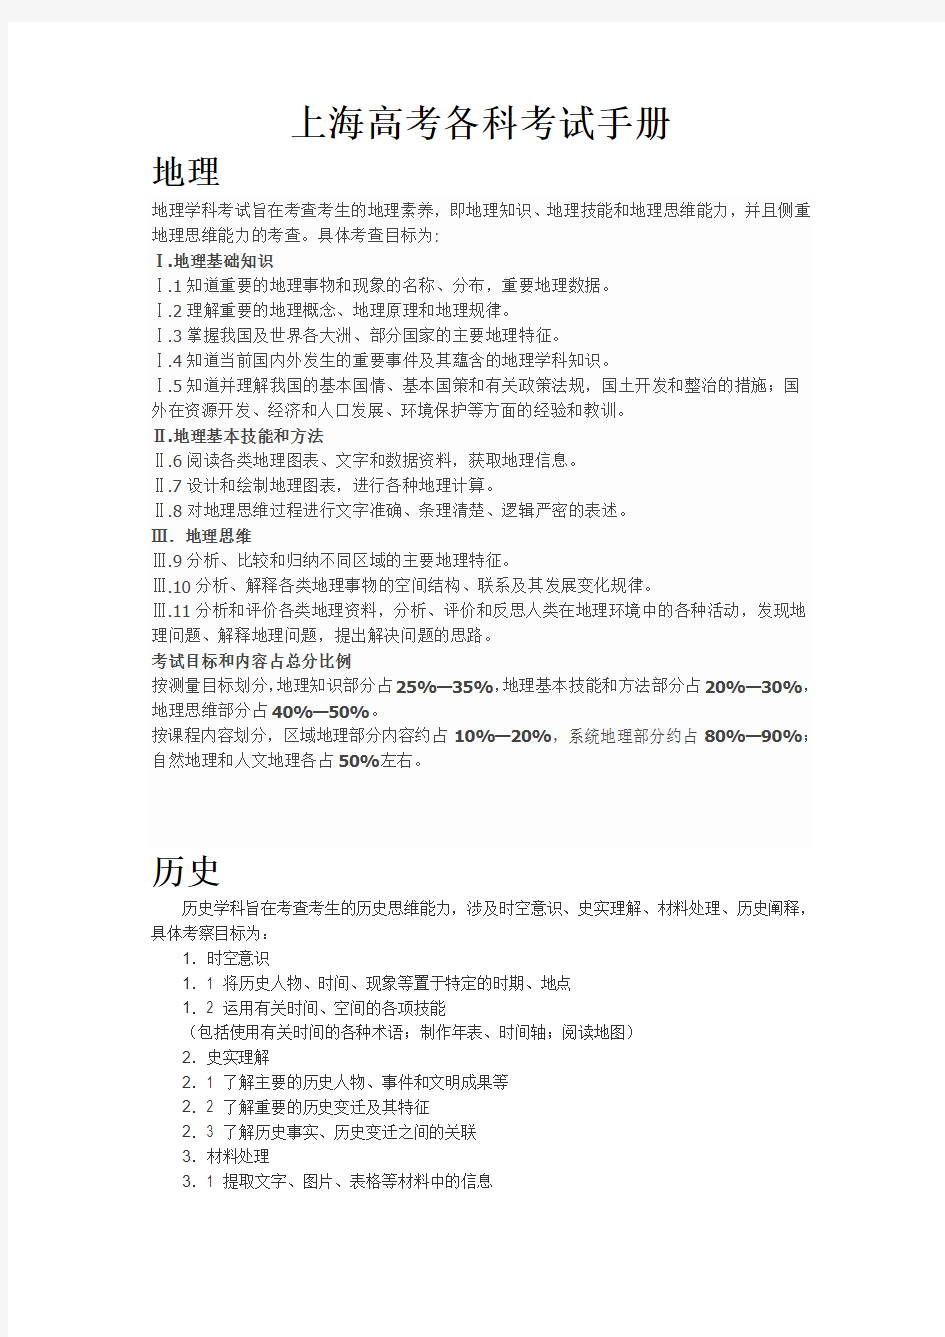 上海中高考各科考试手册